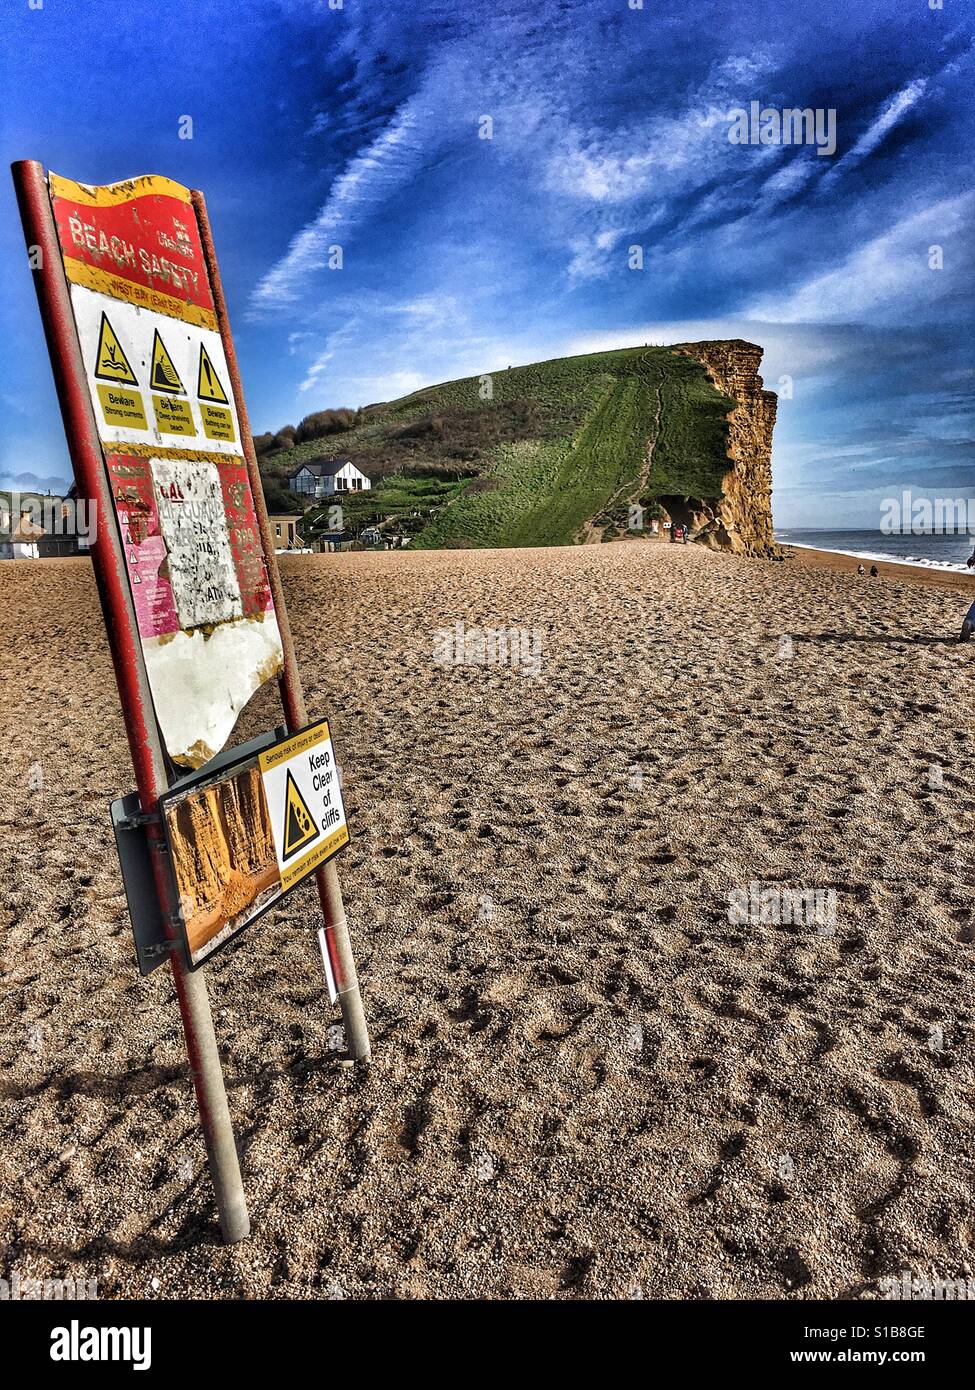 Strand-Sicherheitszeichen am West Bay Beach, Dorset, England. Cliff-Erosion ist ein großes Anliegen an der Jurassic Coast, zum Weltkulturerbe. Stockfoto